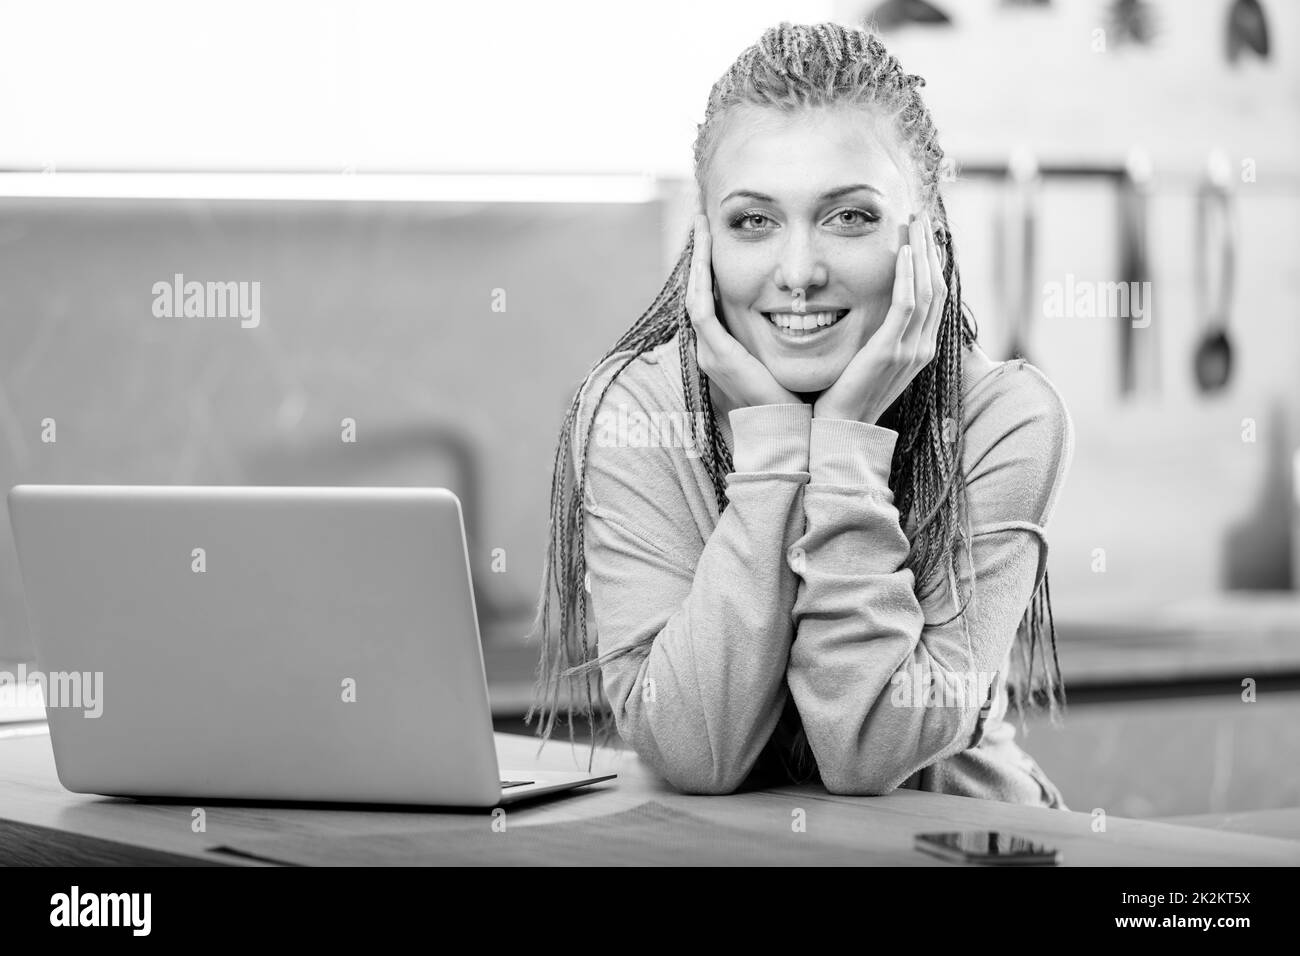 Junge lächelnde Frau, die neben dem Computer sitzt Stockfoto